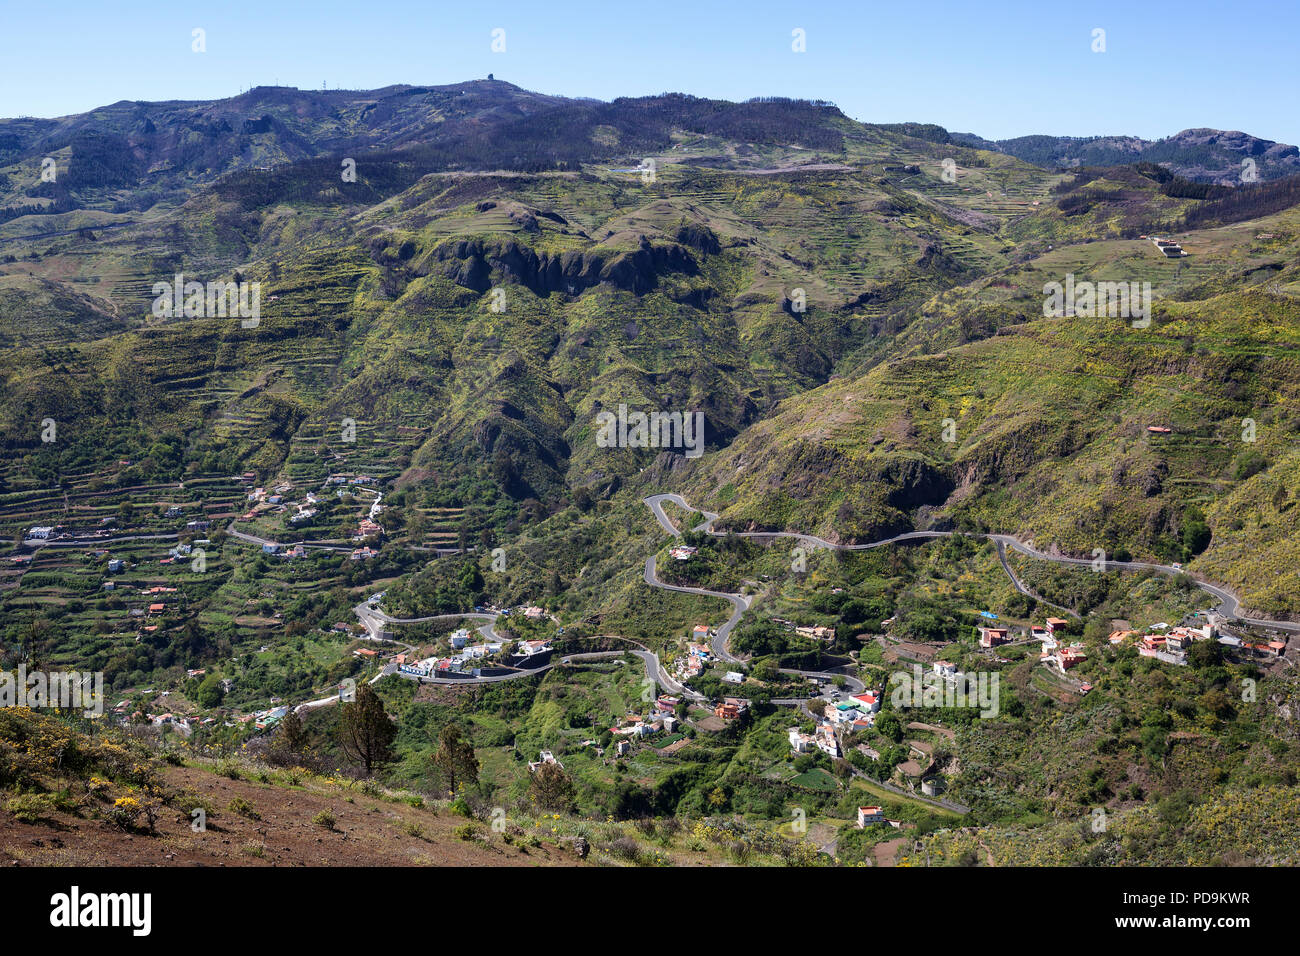 View of the mountain landscape around El Estanco, behind the Pico de las Nieves, Gran Canaria, Canary Islands, Spain Stock Photo